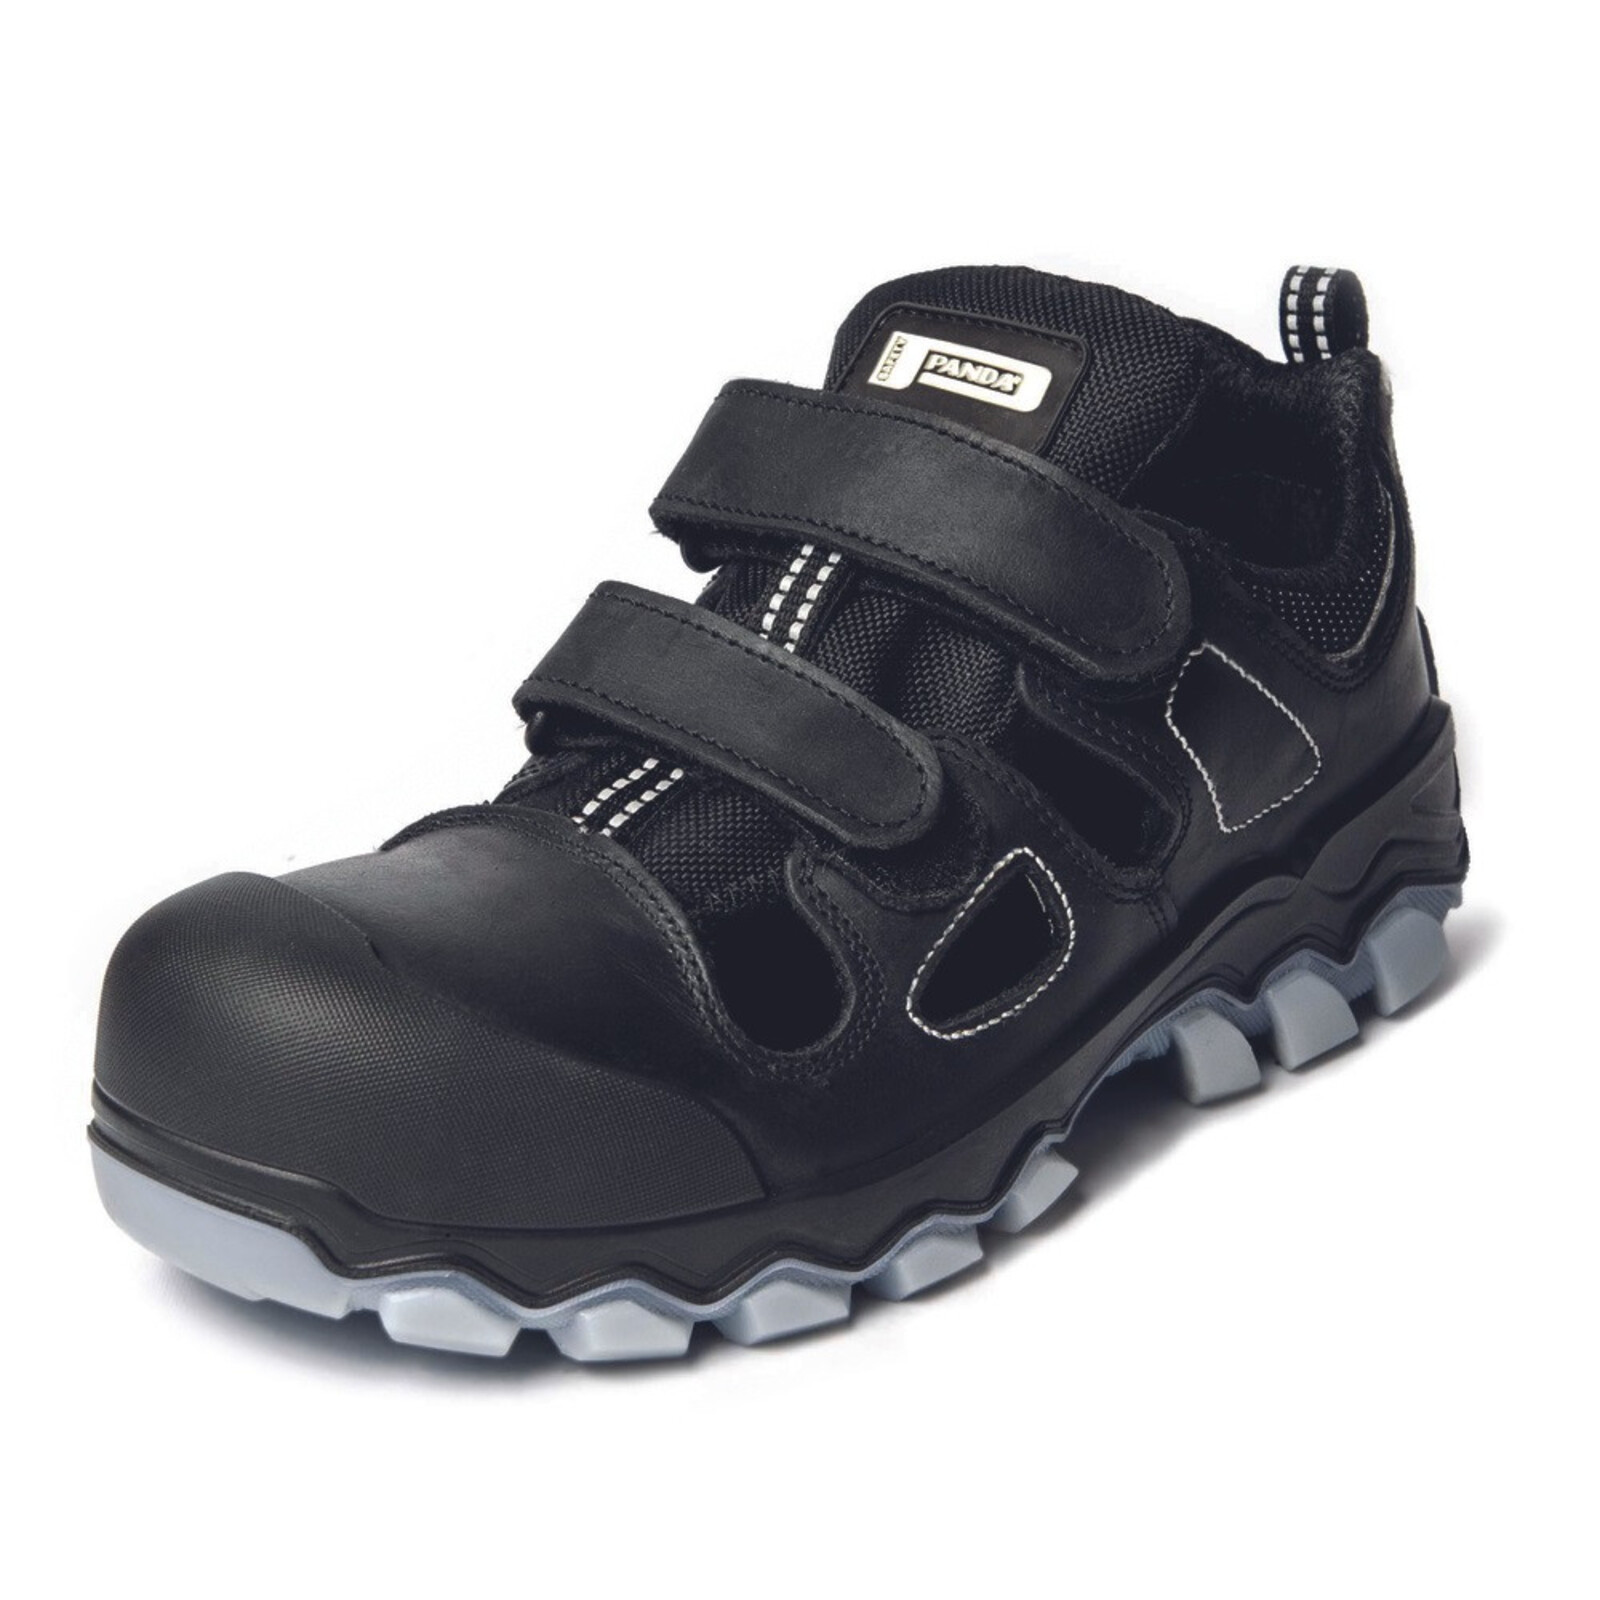 Bezpečnostné sandále Panda Techo No. Two MF S1P SRC - veľkosť: 40, farba: čierna/sivá